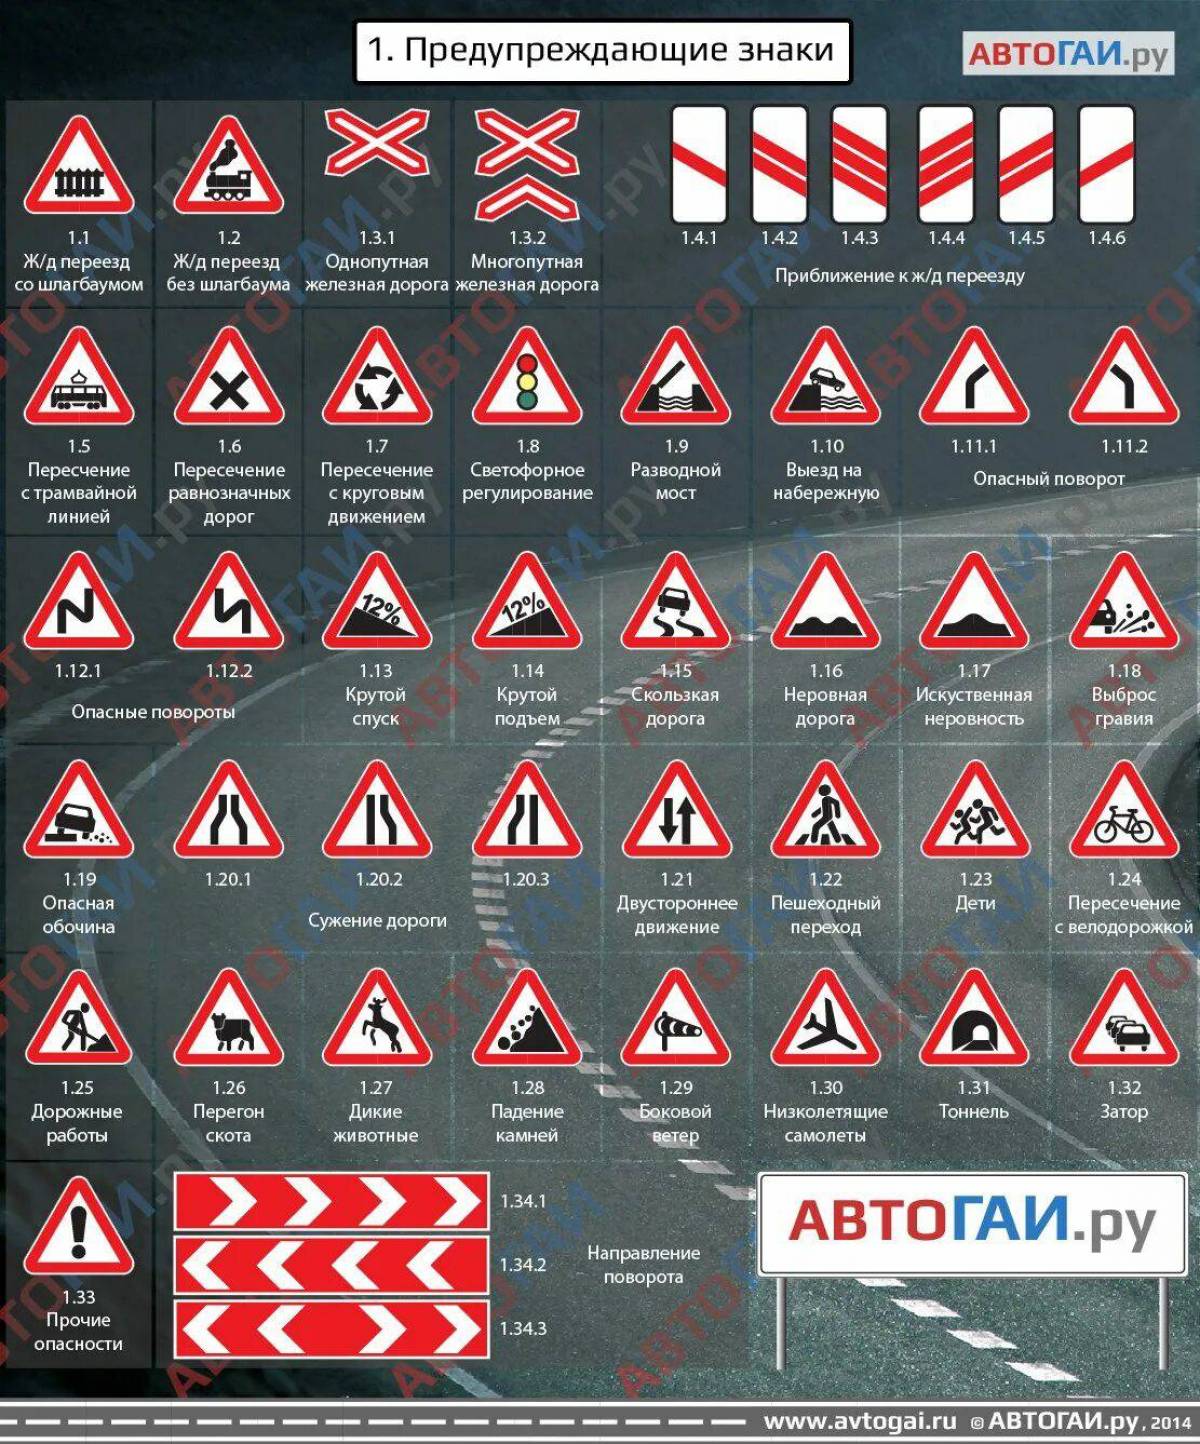 Знаки дорожного движения с пояснениями и картинками. Знаки ПДД И их обозначения. Предупреждающие знаки ПДД 2021. Обозначение знаков дорожного движения 2020. Дорожные знаки с пояснениями и обозначениями для водителя.